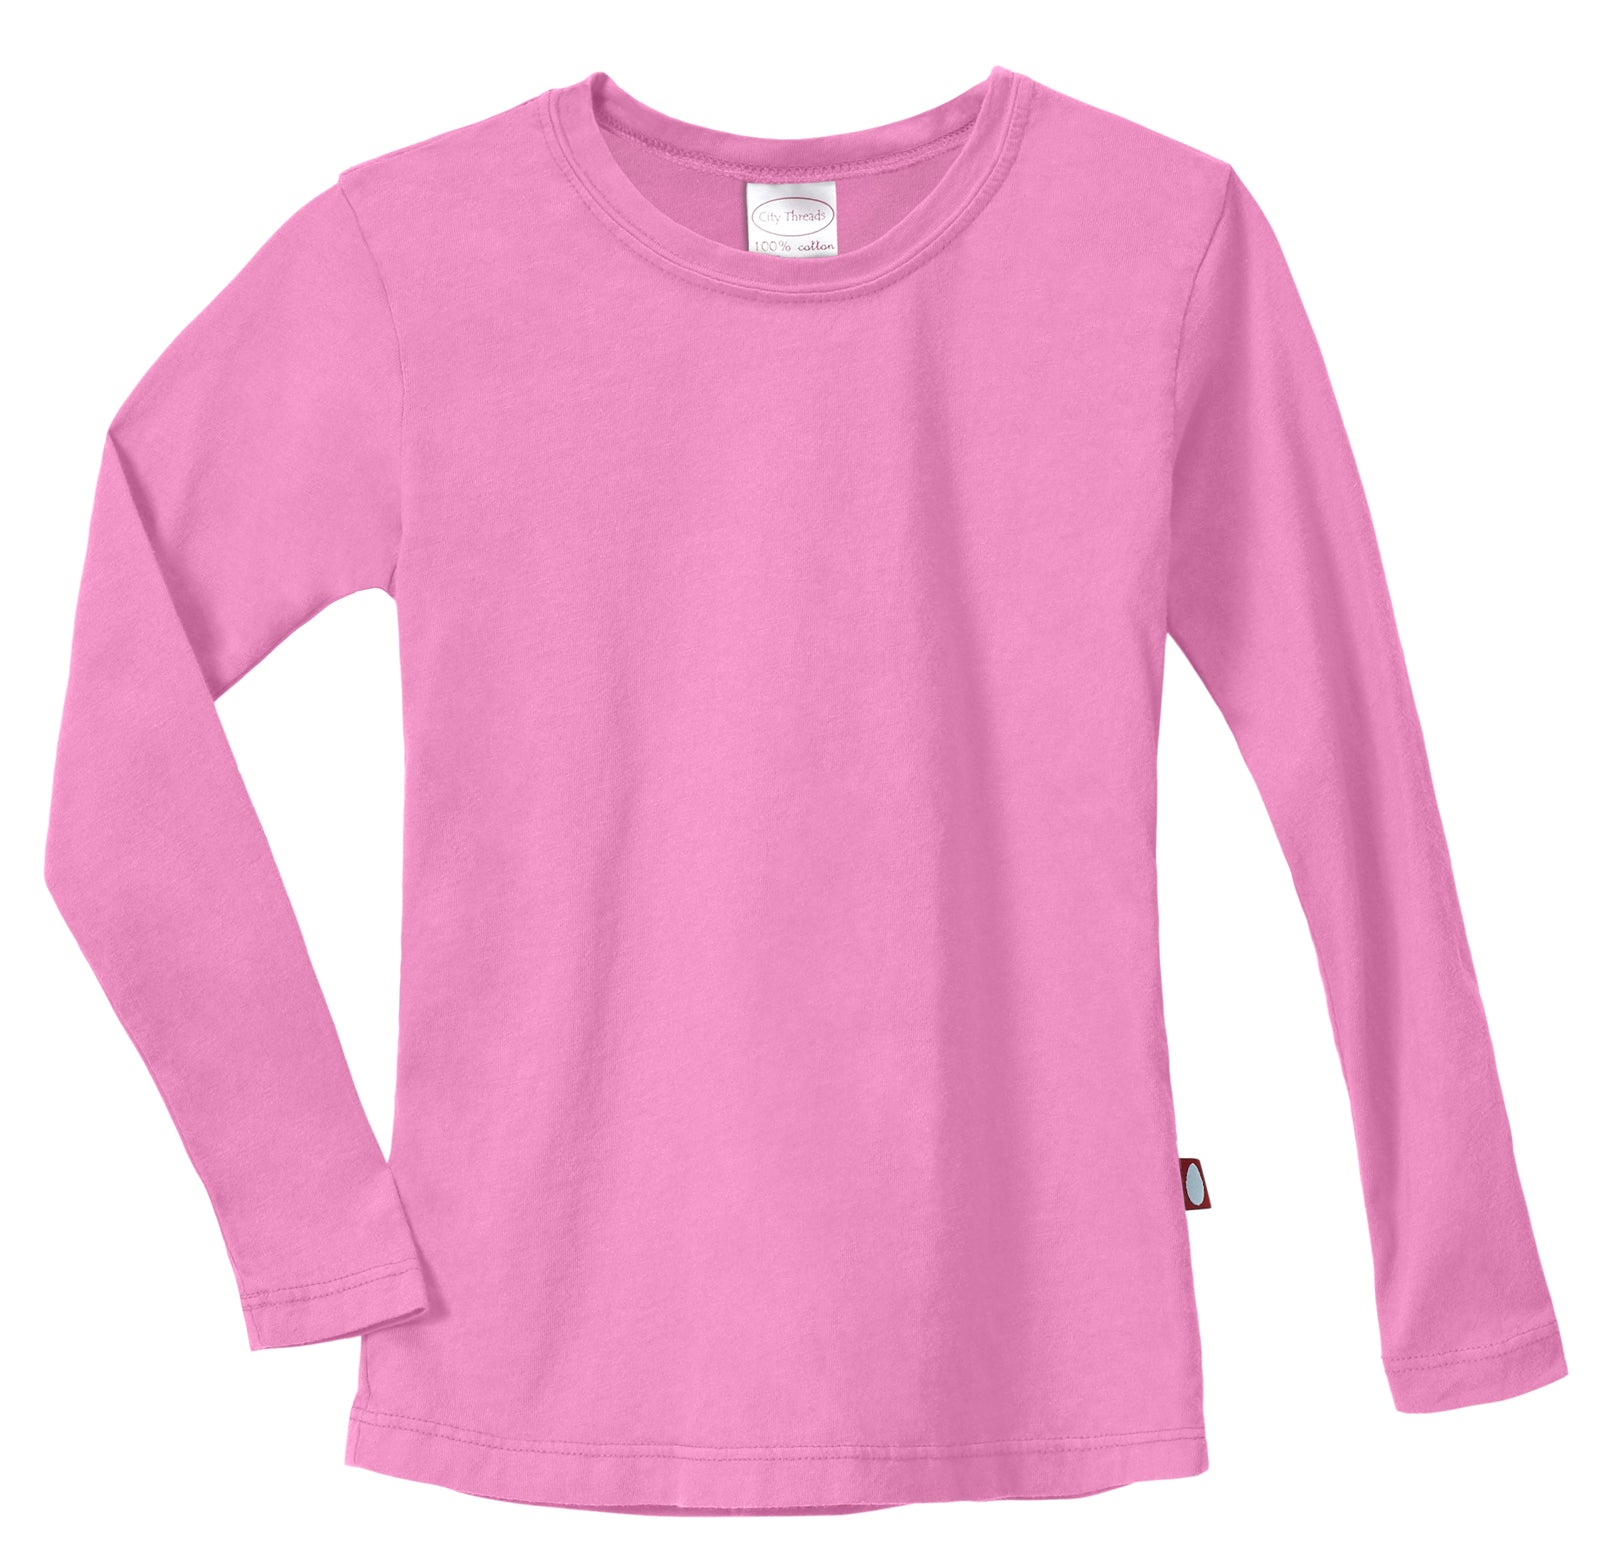 Girls Soft Cotton Jersey Long Sleeve Tee | Medium Pink